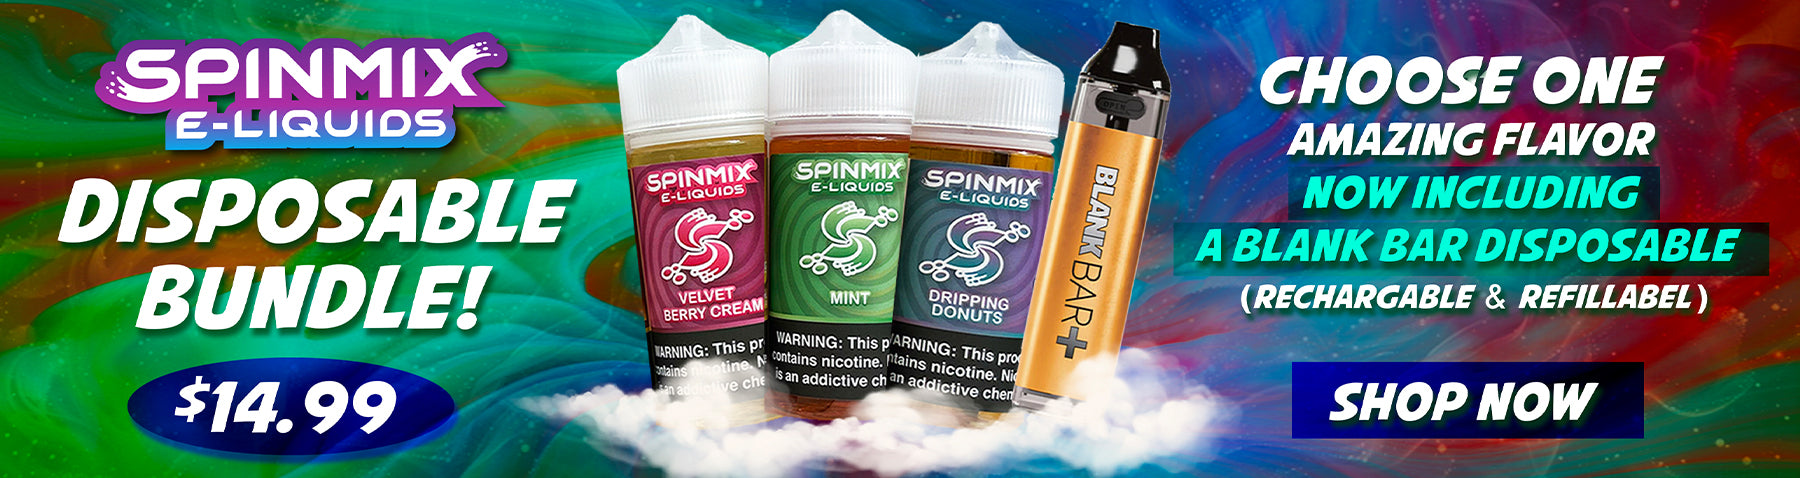 SpinMix E-Liquids Disposable Bundle